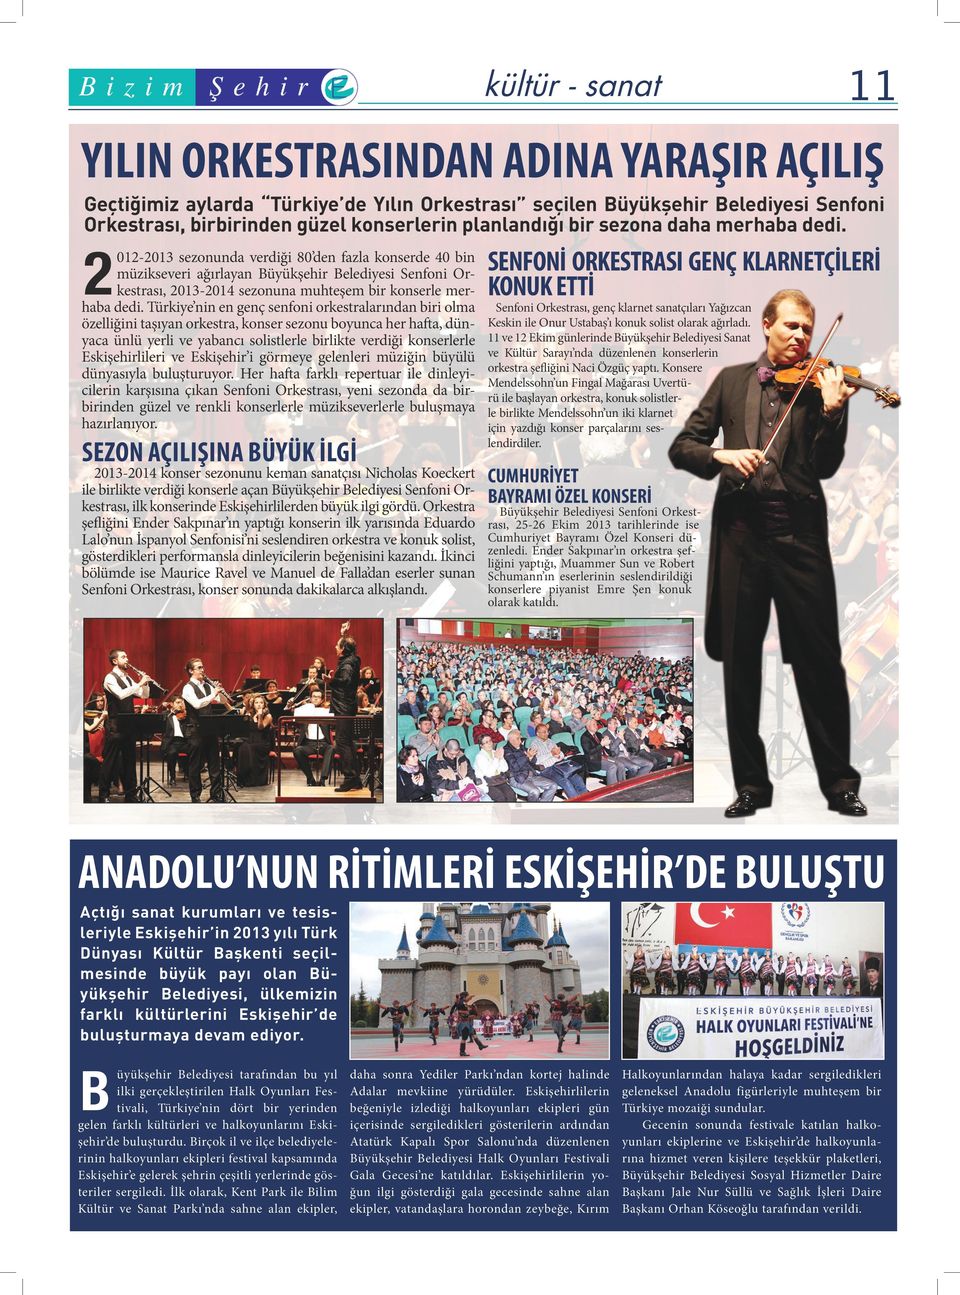 2 012-2013 sezonunda verdiği 80 den fazla konserde 40 bin müzikseveri ağırlayan üyükşehir elediyesi Senfoni Orkestrası, 2013-2014 sezonuna muhteşem bir konserle merhaba dedi.